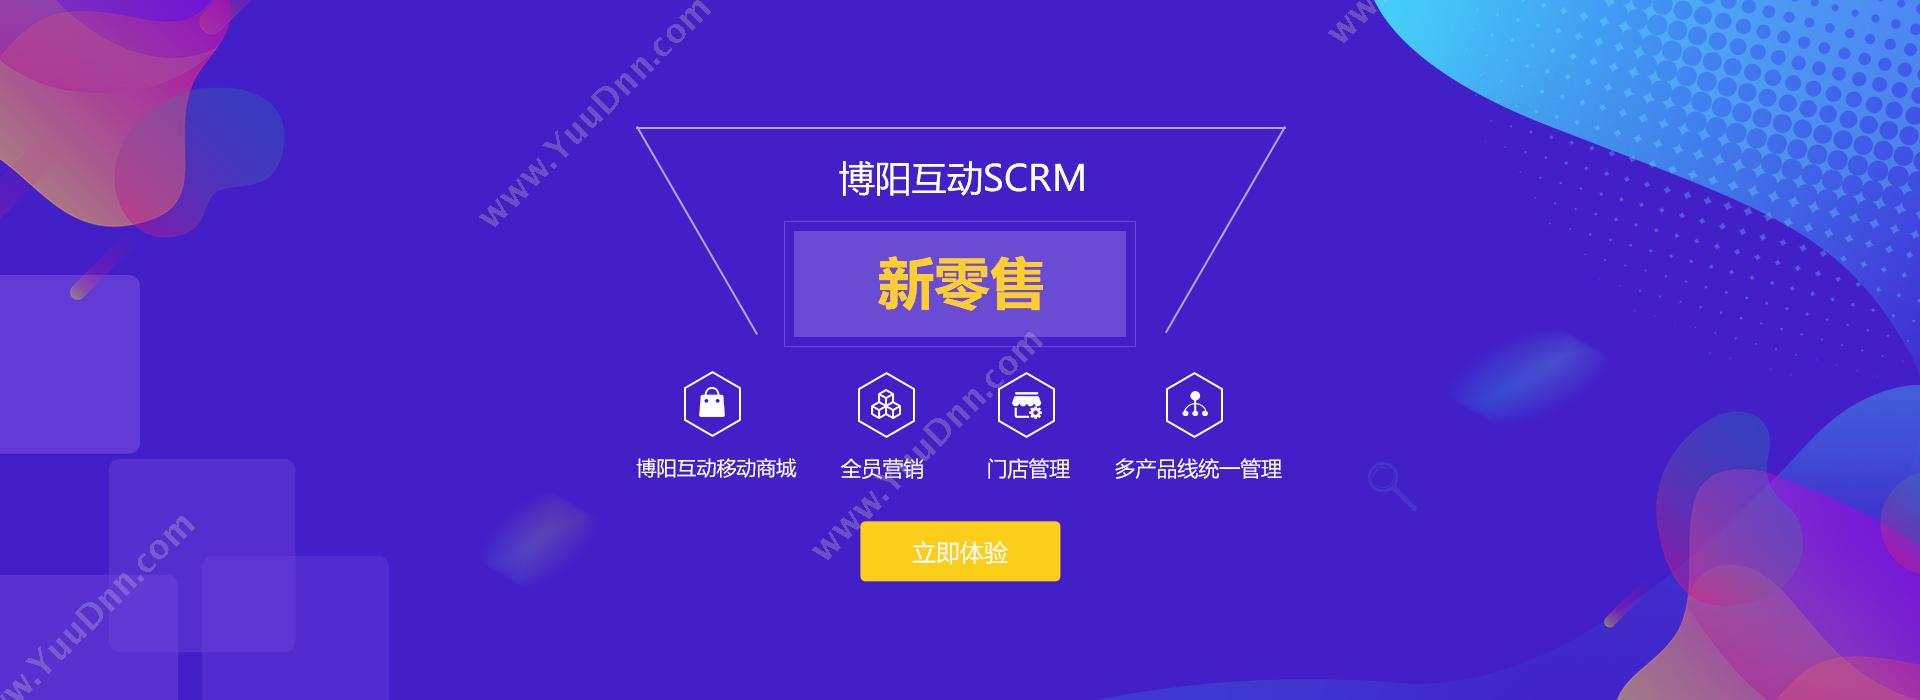 郑州博乐信息技术有限公司 矿山企业一卡通称重软件系统 称重系统